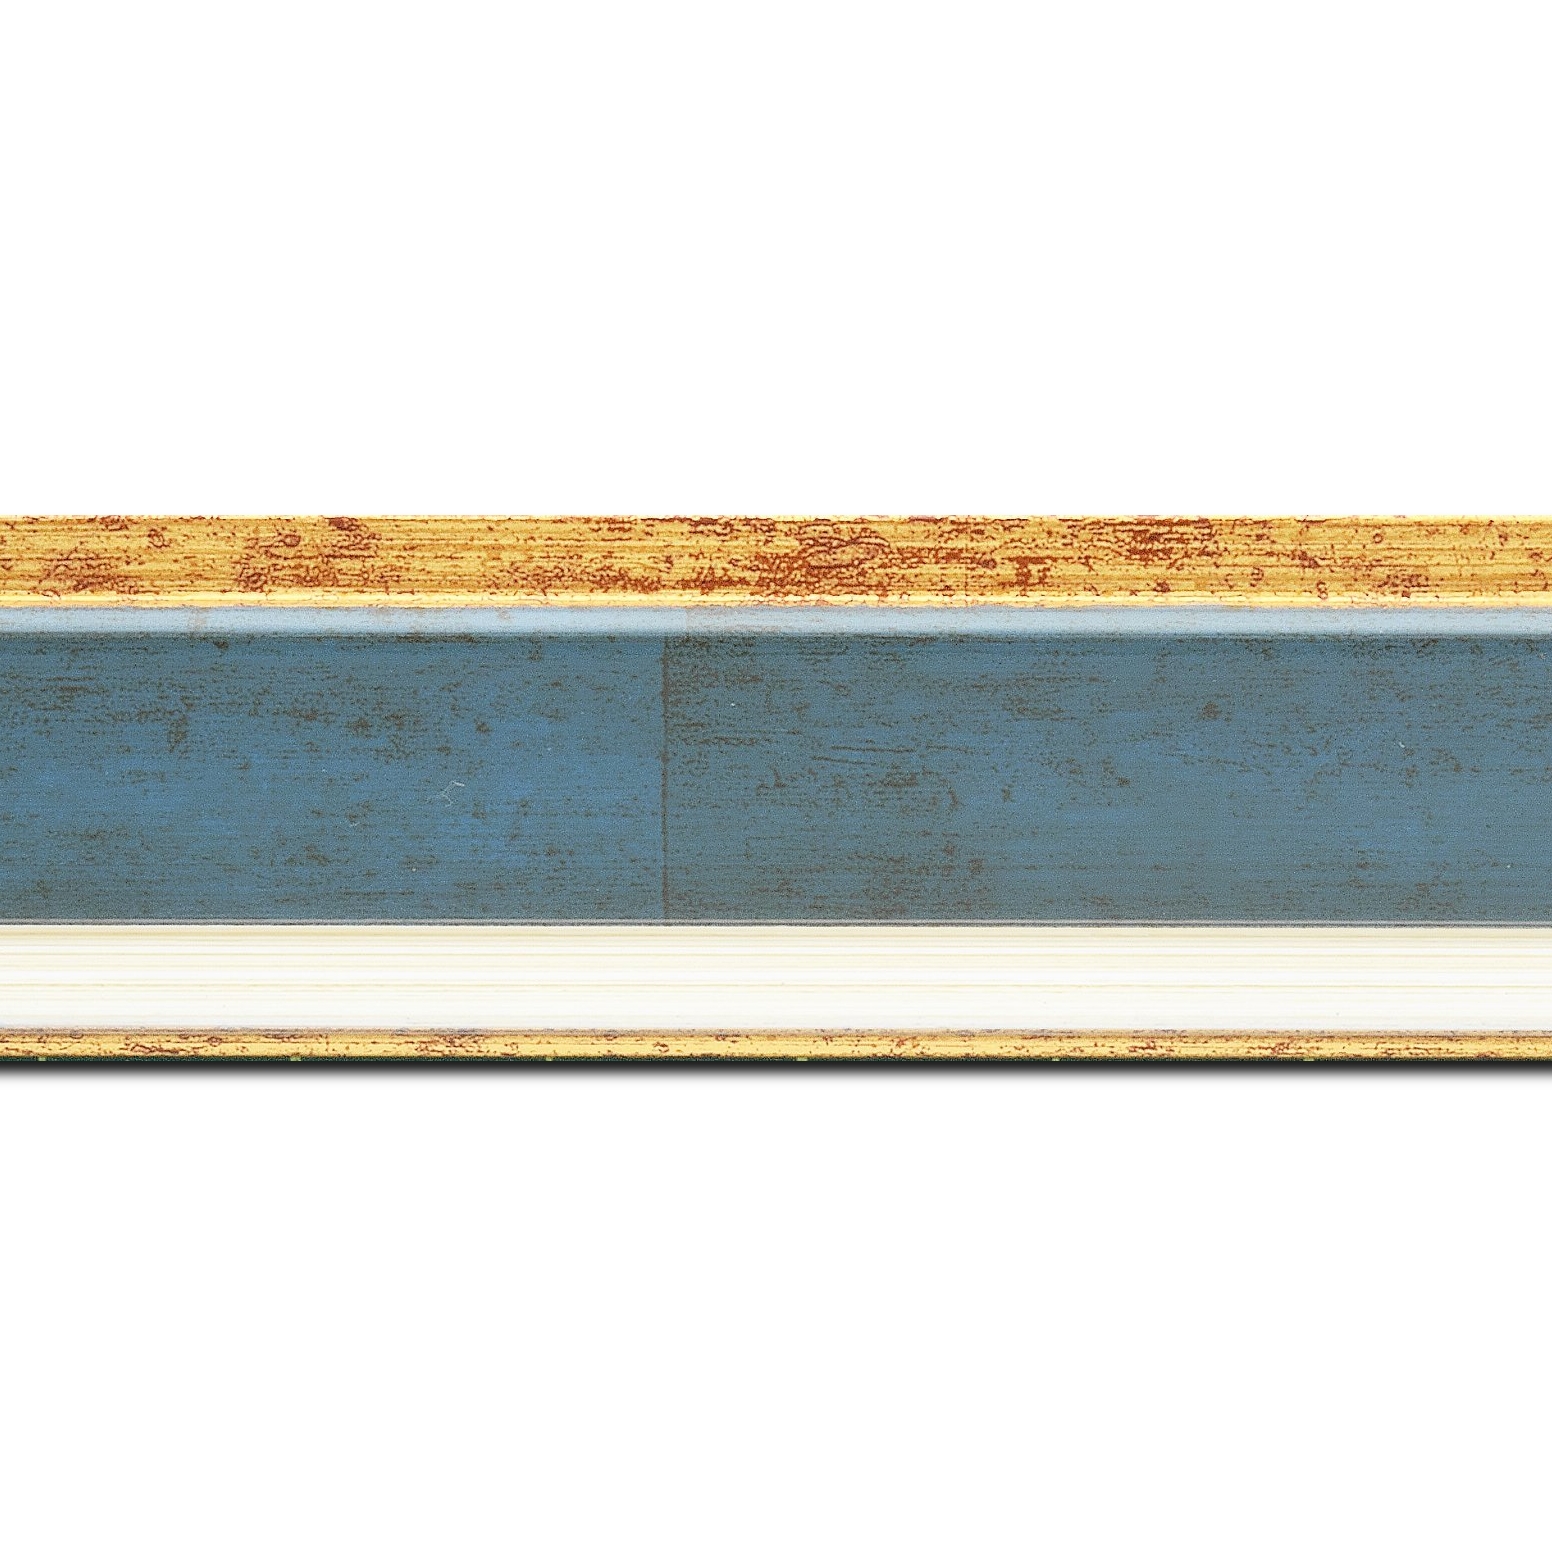 Baguette longueur 1.40m bois profil incliné largeur 5.4cm couleur bleu cobalt marie louise crème filet or intégrée